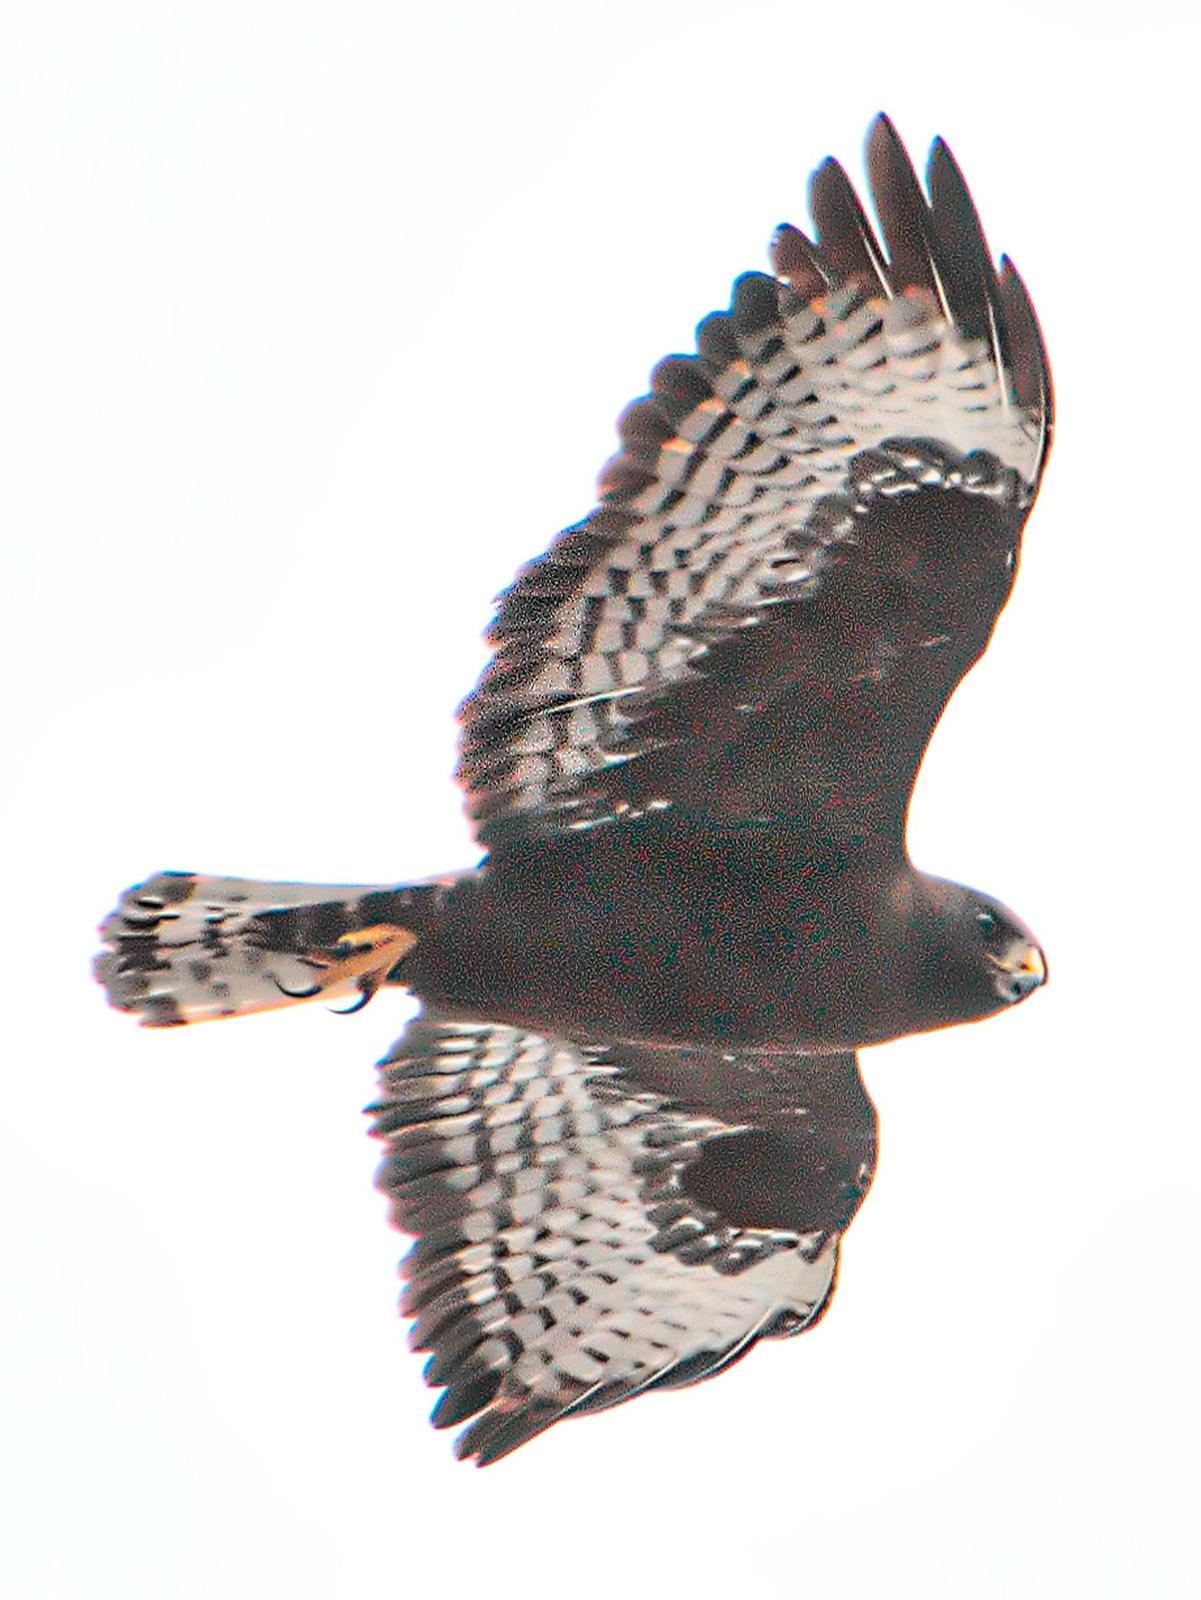 Short-tailed Hawk Photo by Dan Tallman